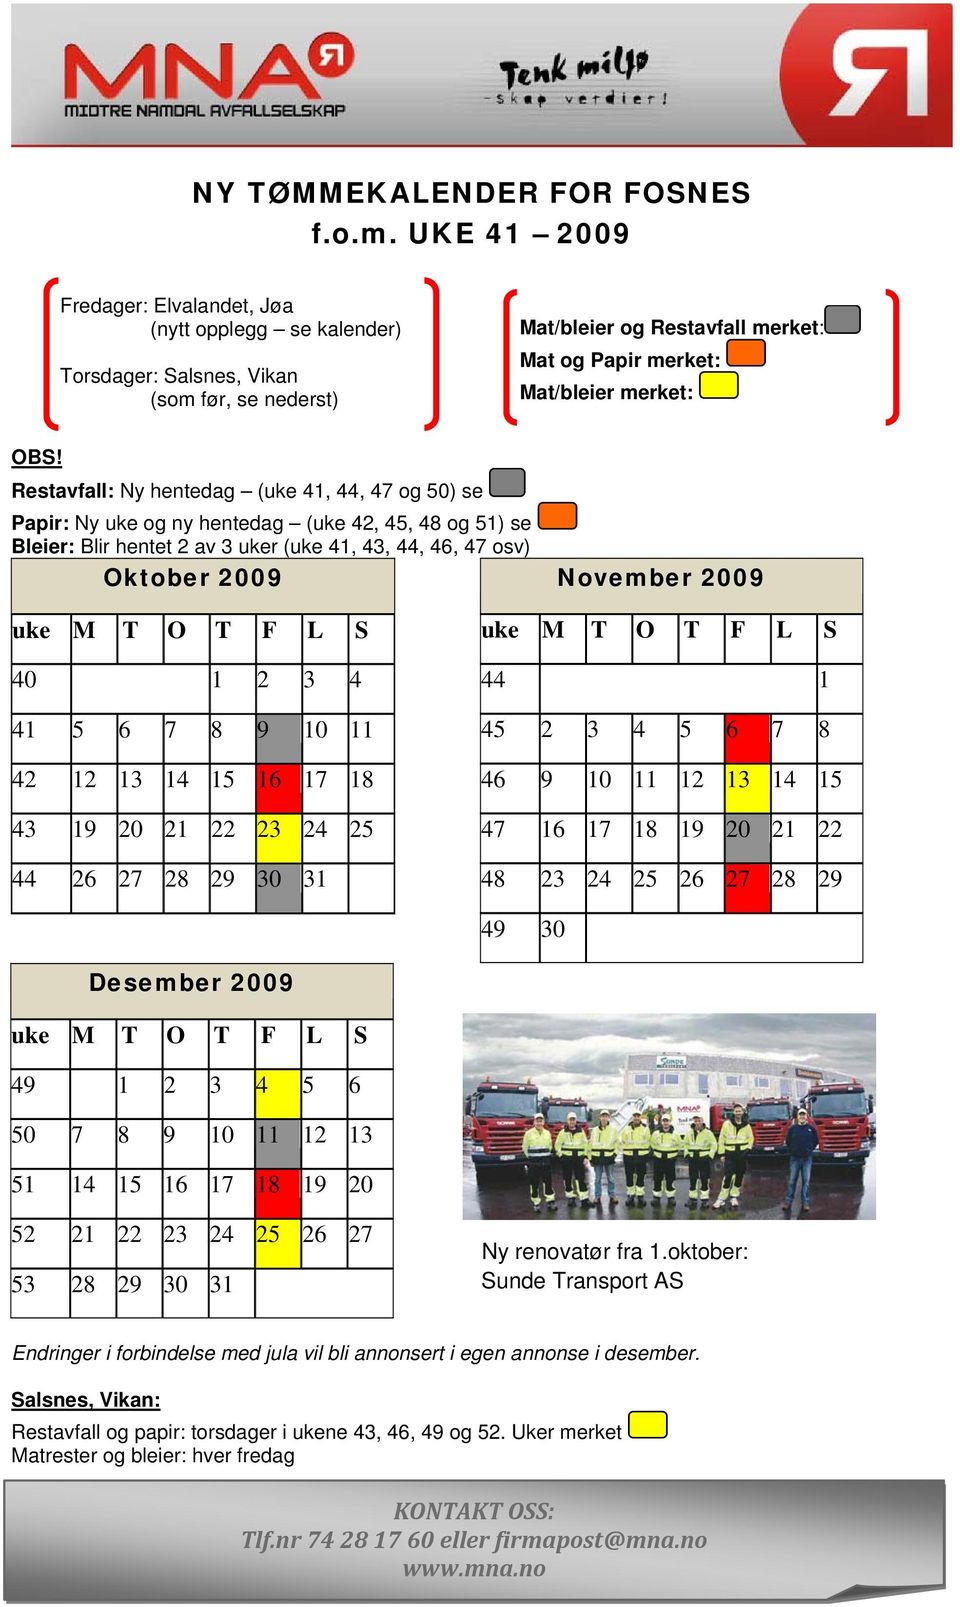 Restavfall: Ny hentedag (uke 41, 44, 47 og 50) se Papir: Ny uke og ny hentedag (uke 42, 45, 48 og 51) se Bleier: Blir hentet 2 av 3 uker (uke 41, 43, 44, 46, 47 osv) Oktober 2009 November 2009 uke M